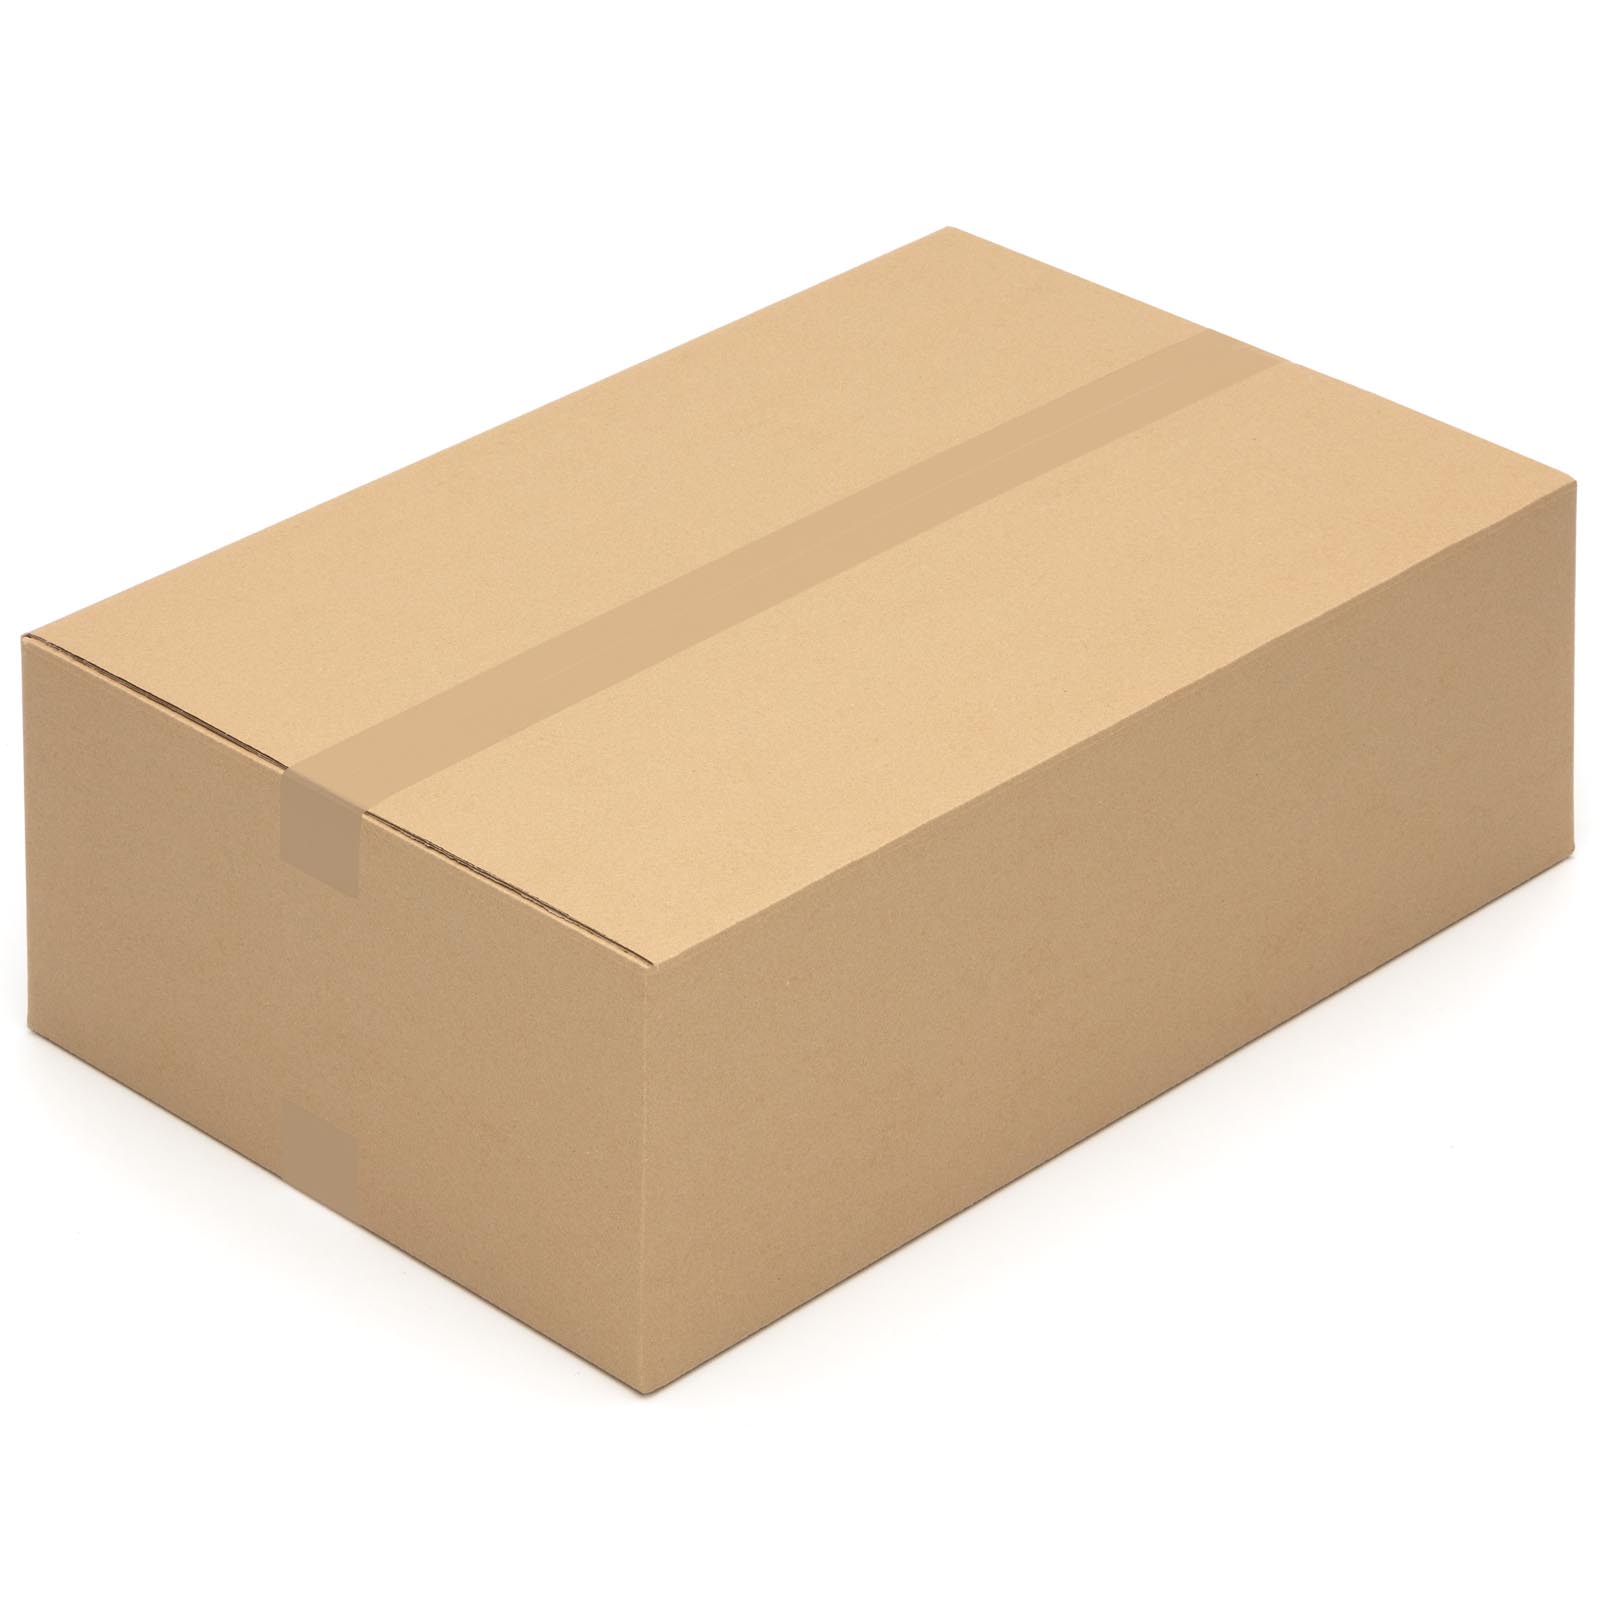 Klappdeckelkarton 600 x 400 x 200 mm Schachtel Versandkarton Paket Verpackung